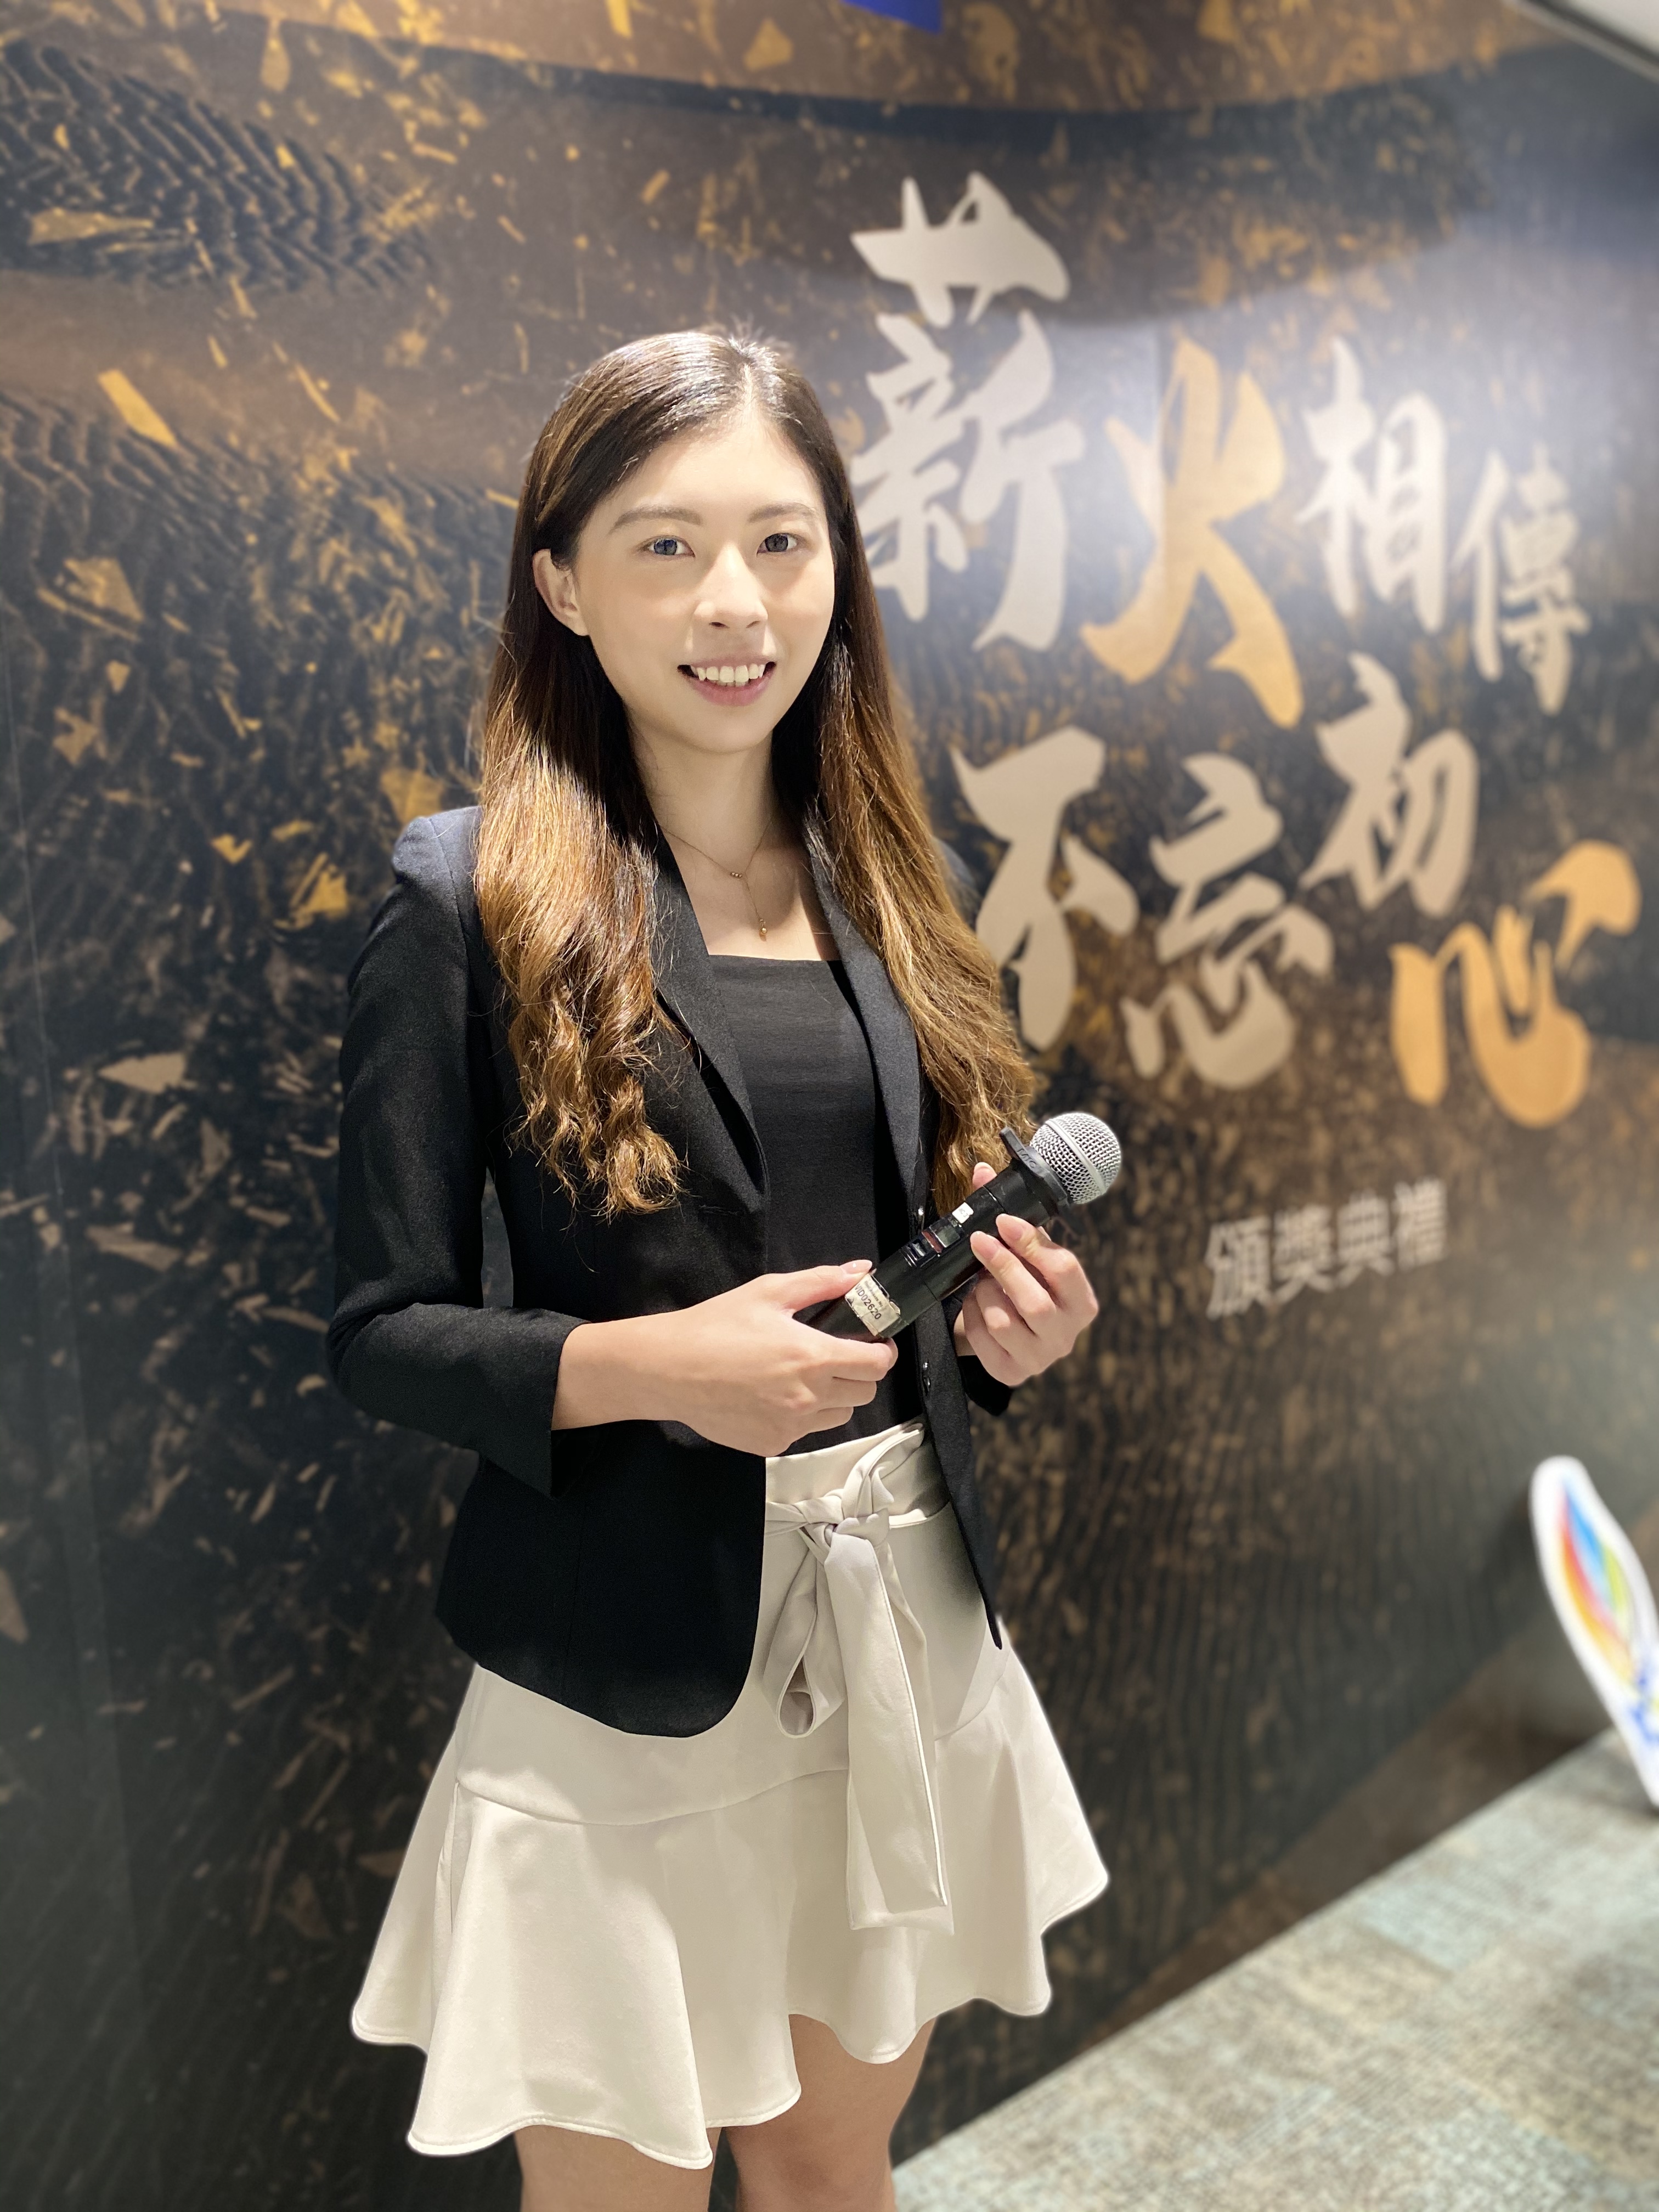 Kelly Lau 劉錦紅之司儀主持紀錄: 活動主持 - 傑出家族企業選舉 